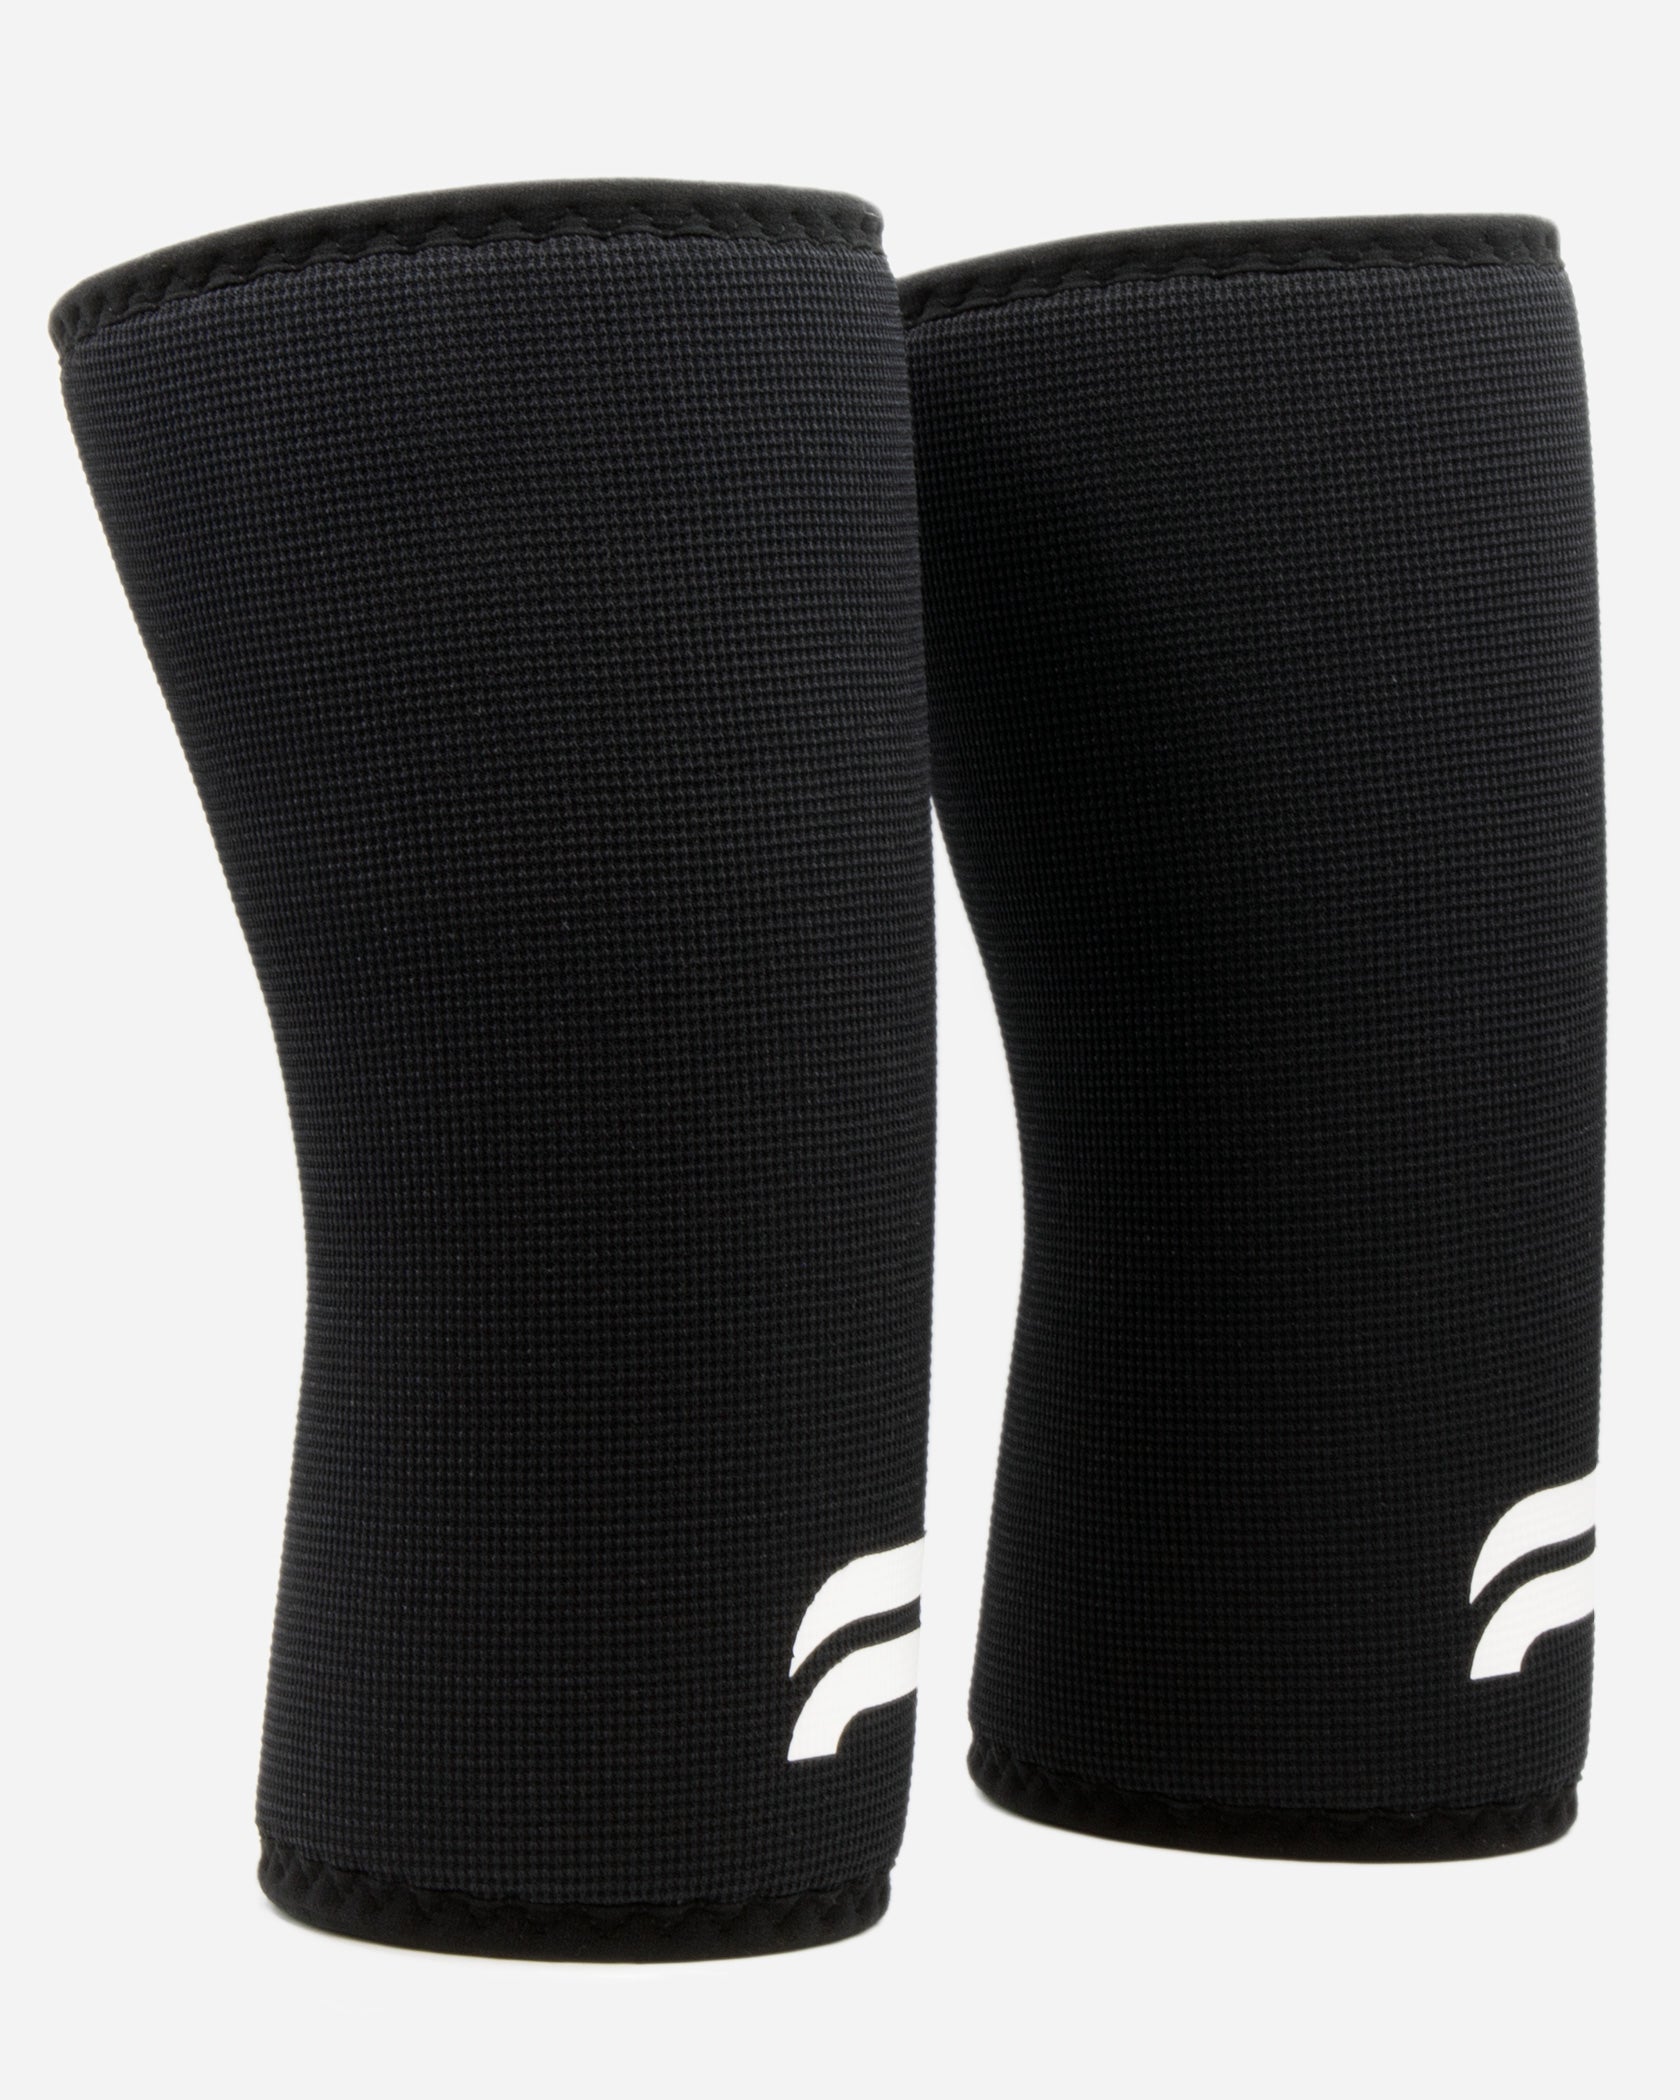 Knee Sleeves 7 mm - Regular - Black